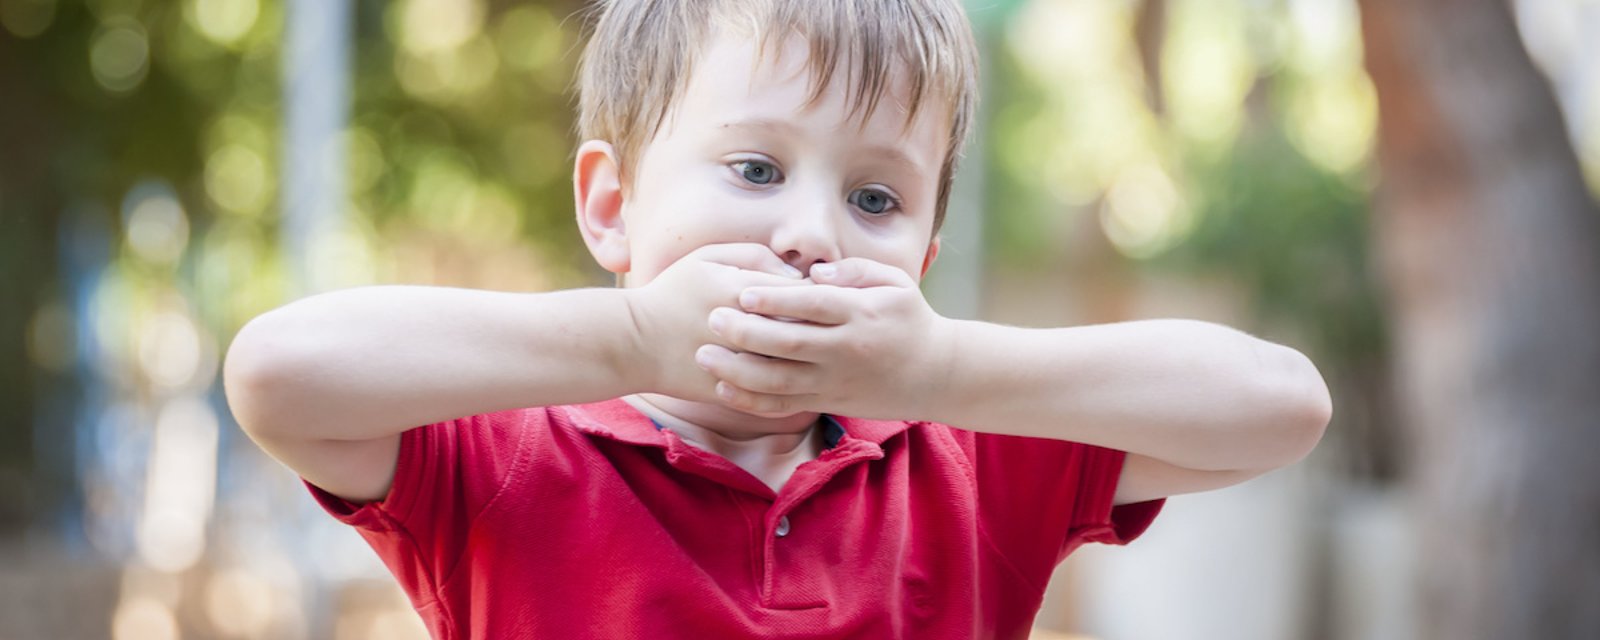 10 choses à ne pas dire aux parents d'un enfant autiste